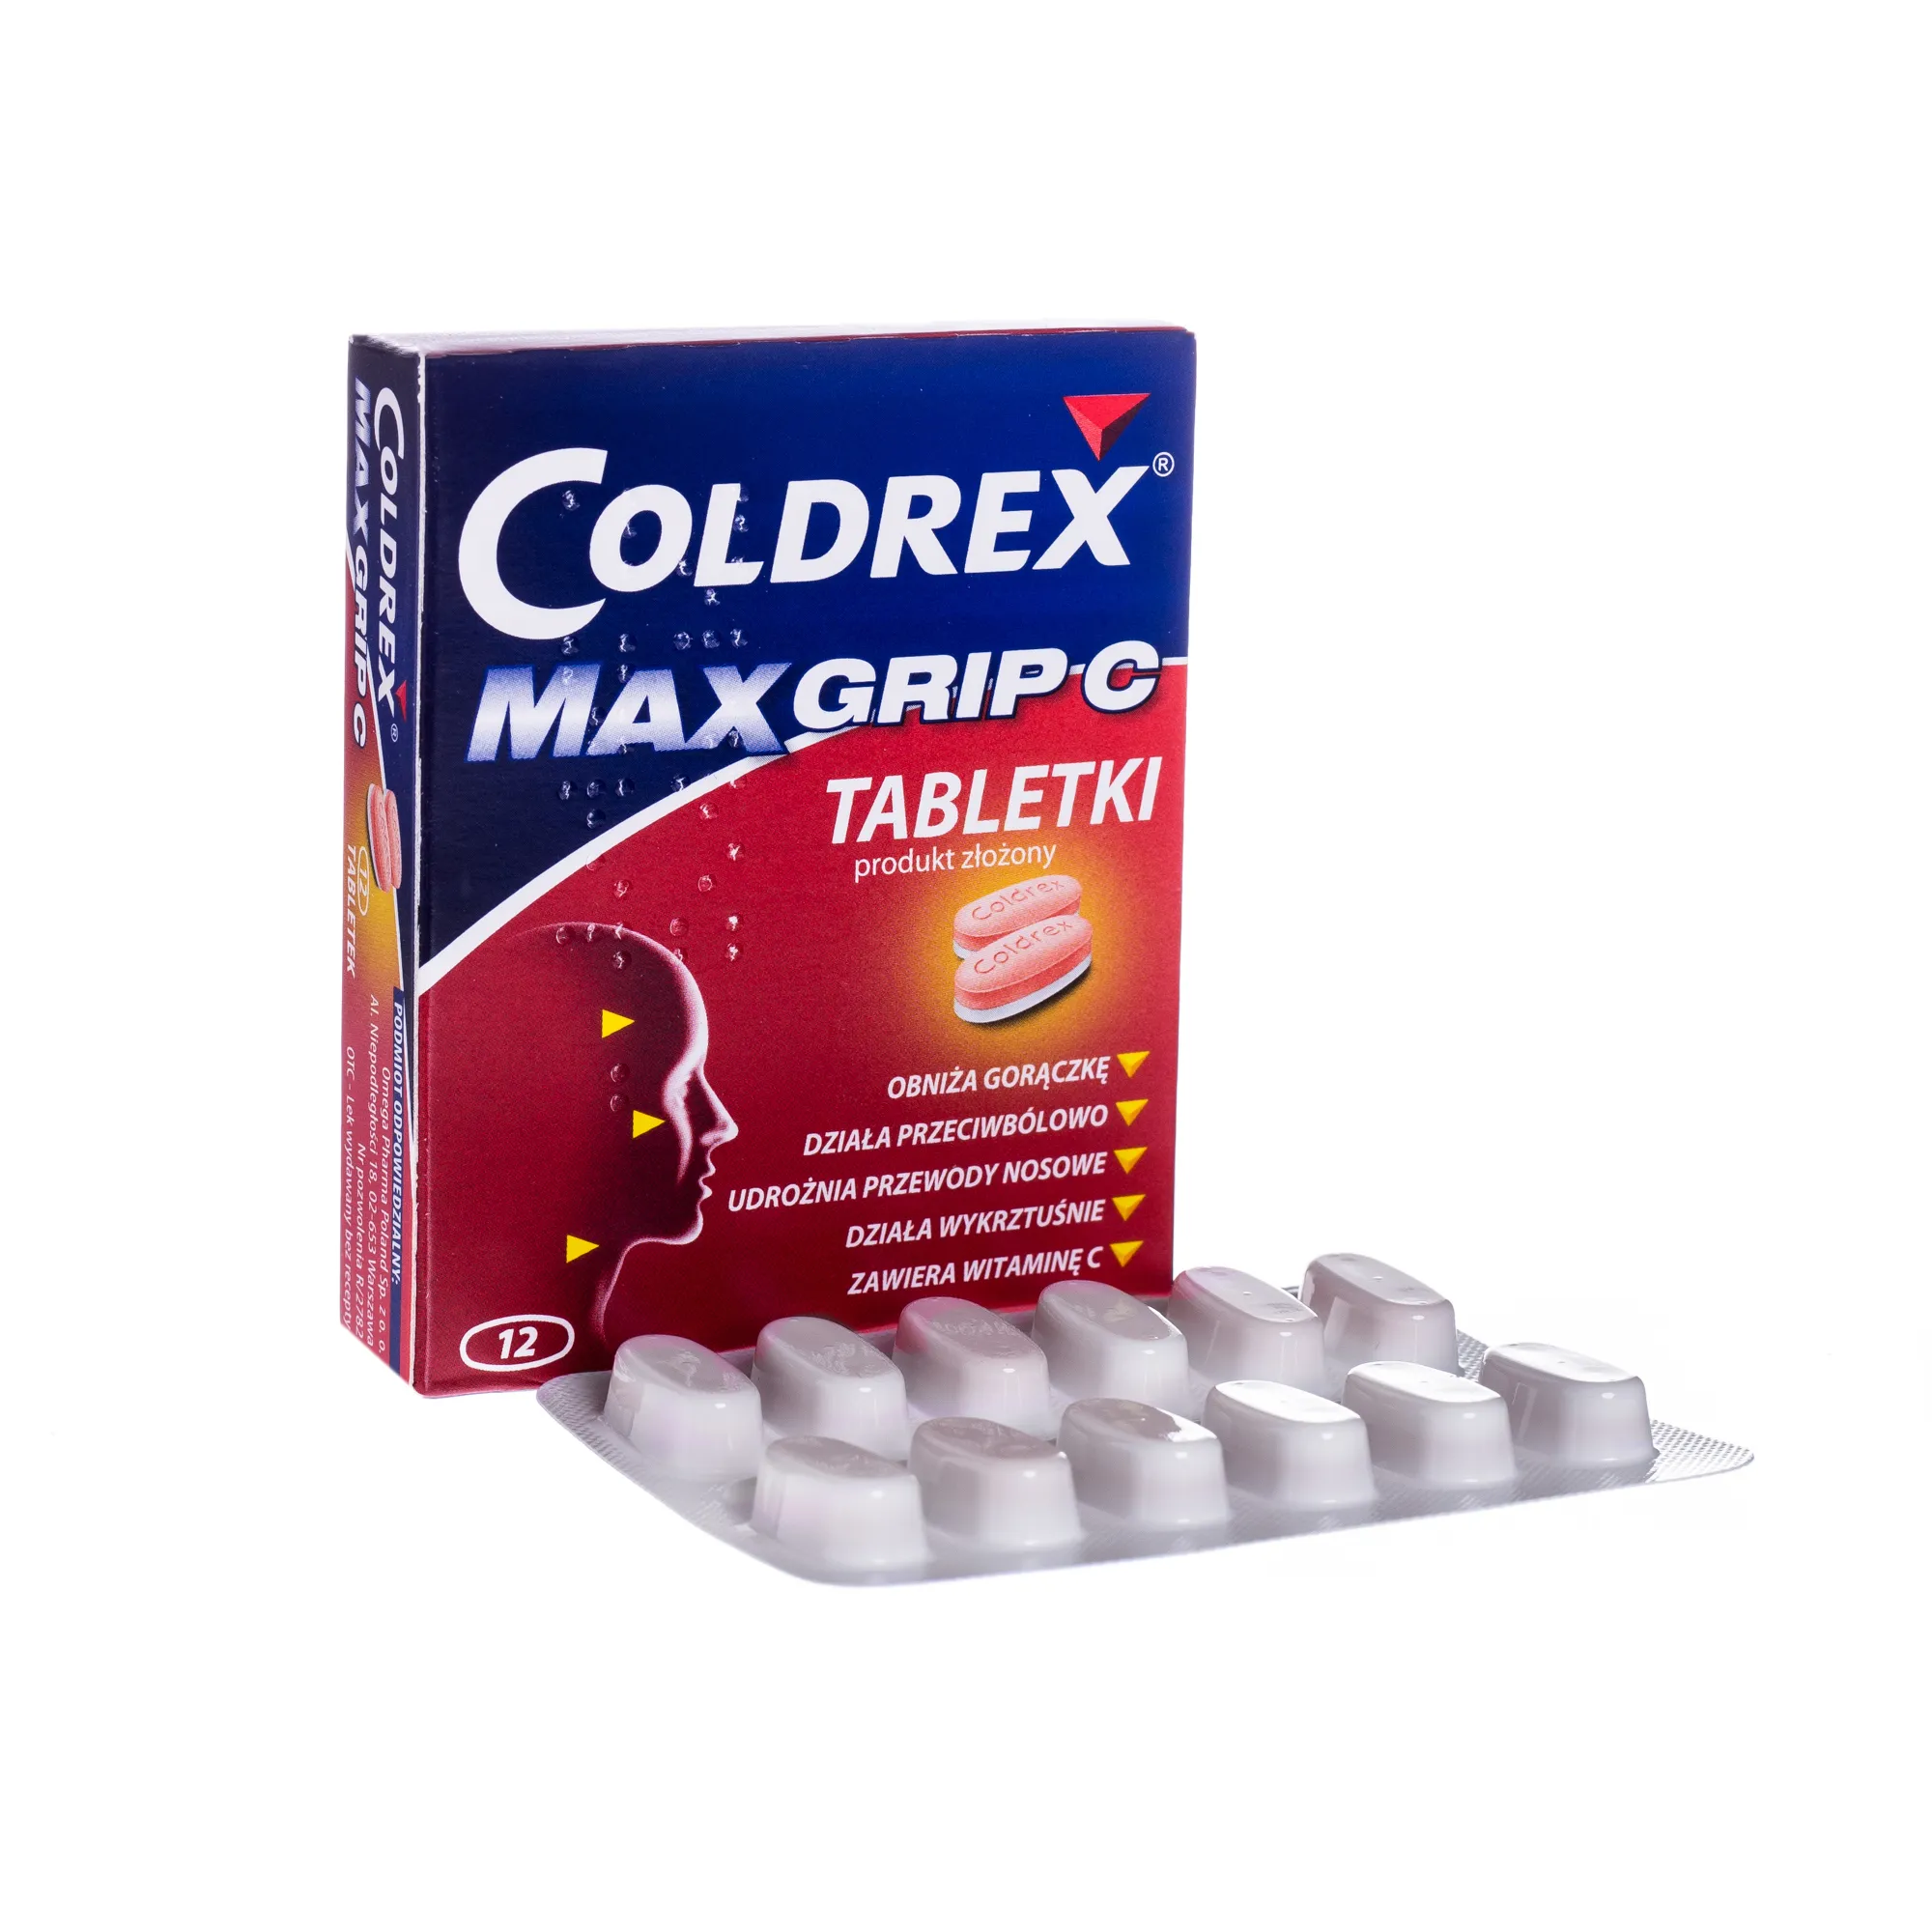 Coldrex Max Grip C, wieloskładnikowy lek przeciw objawom grypy i przeziębienia, 12 sztuk 